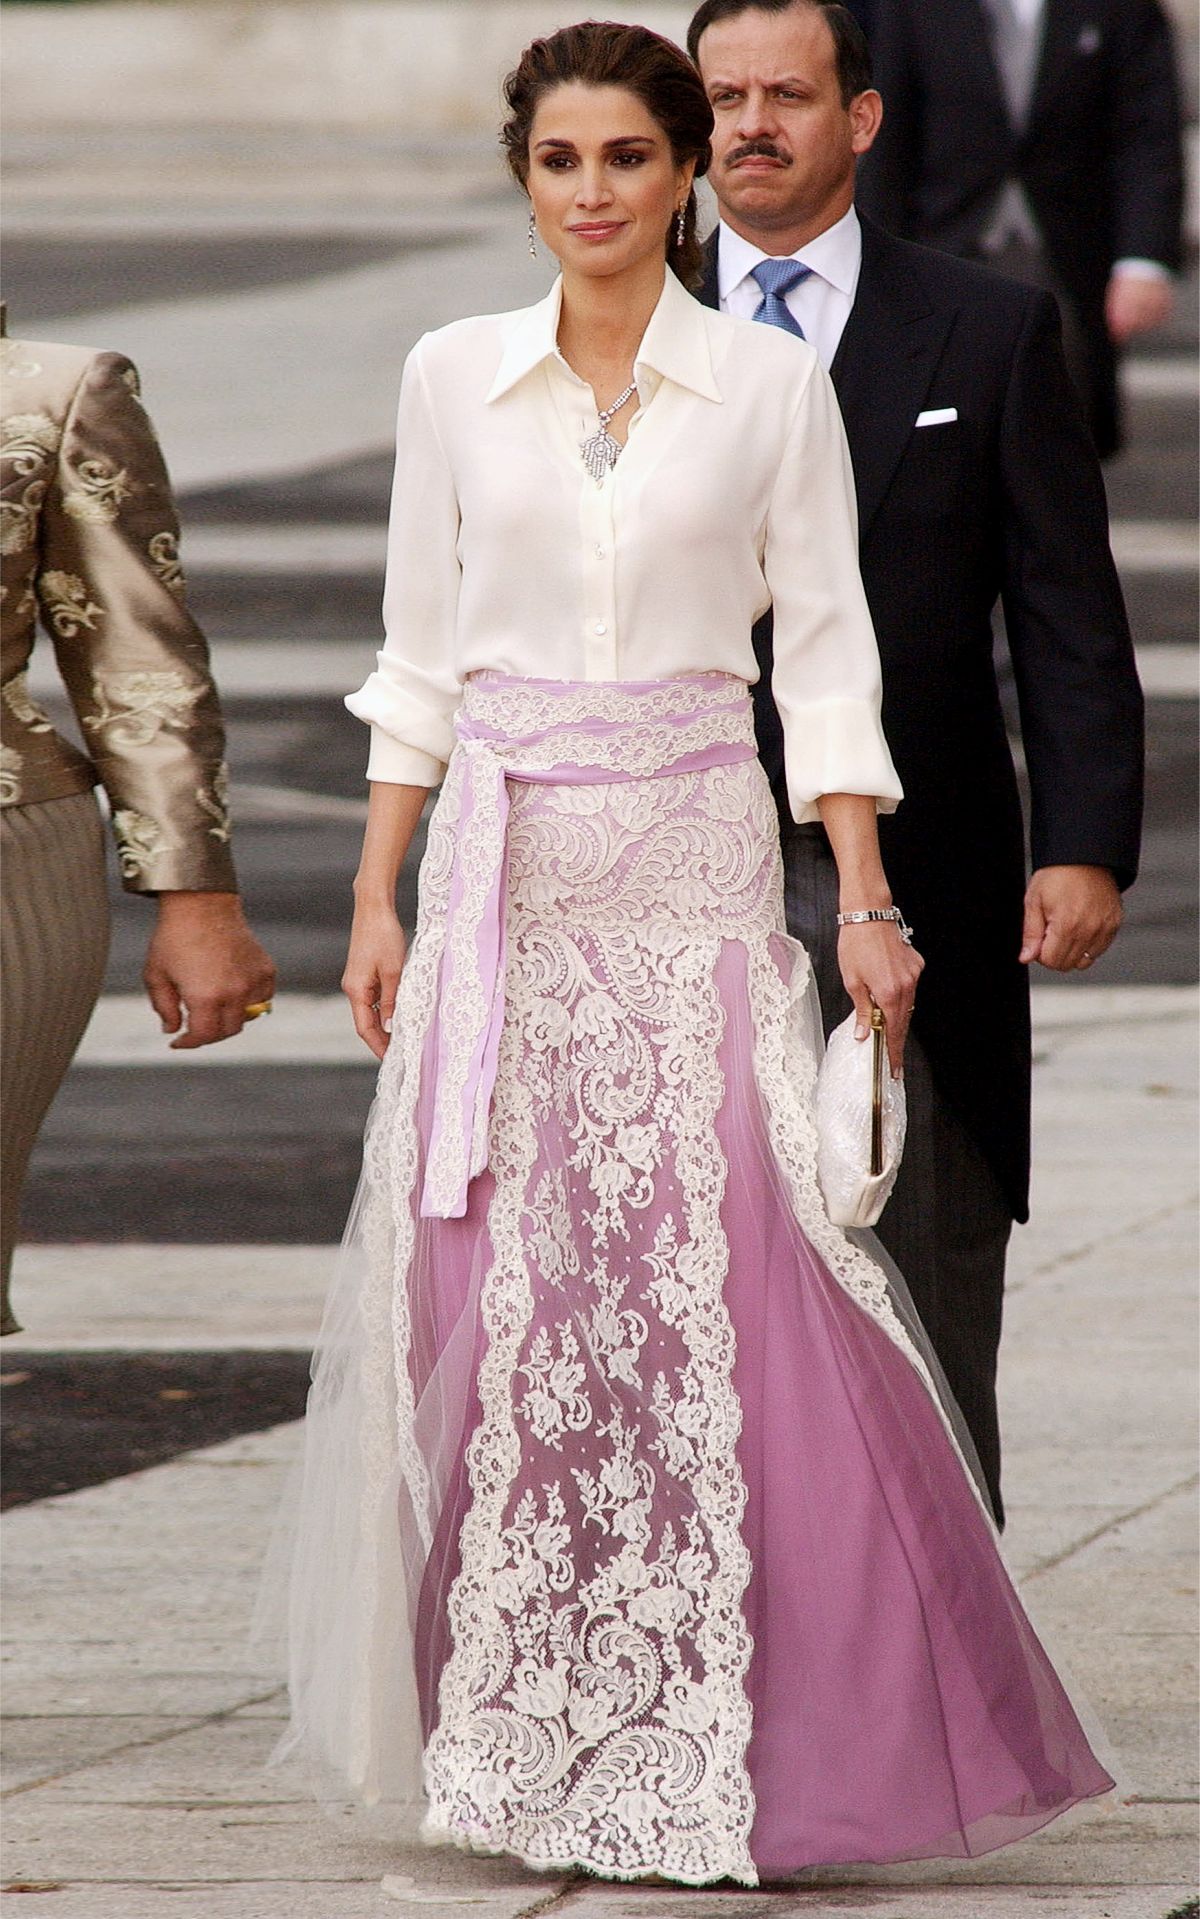 Королева Иордании Рания аль-Абдалла на свадьбе наследного принца Испании Фелипе де Бурбона и Летиции